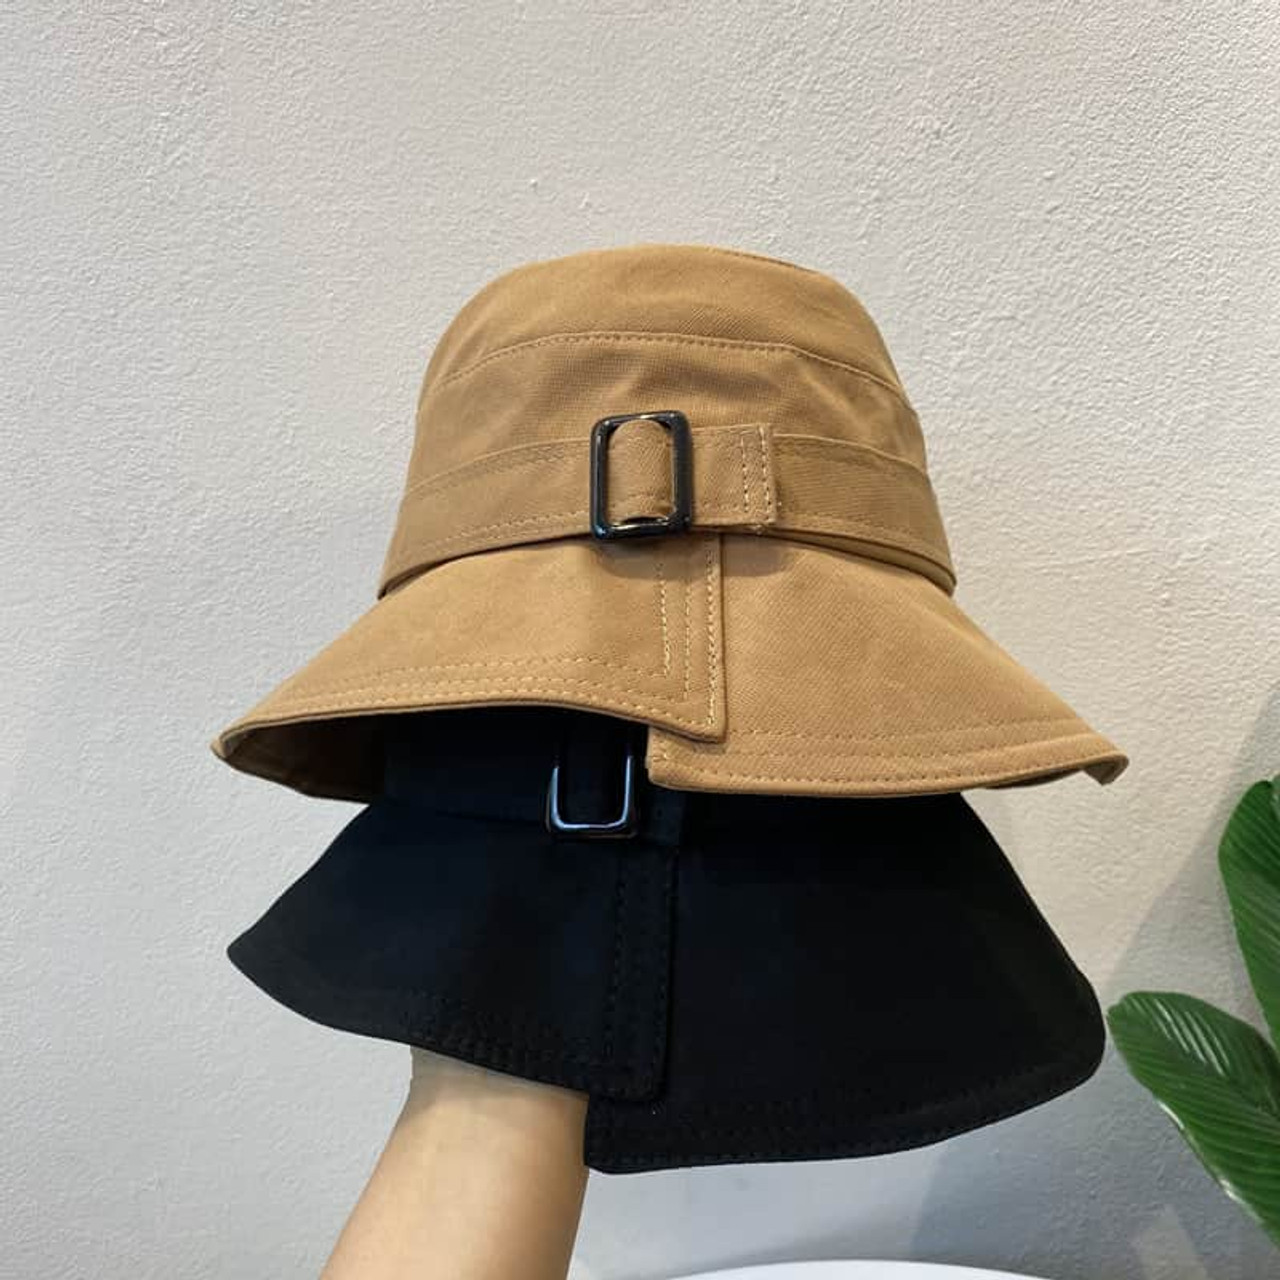 Irregular Brim Button Bucket Hat